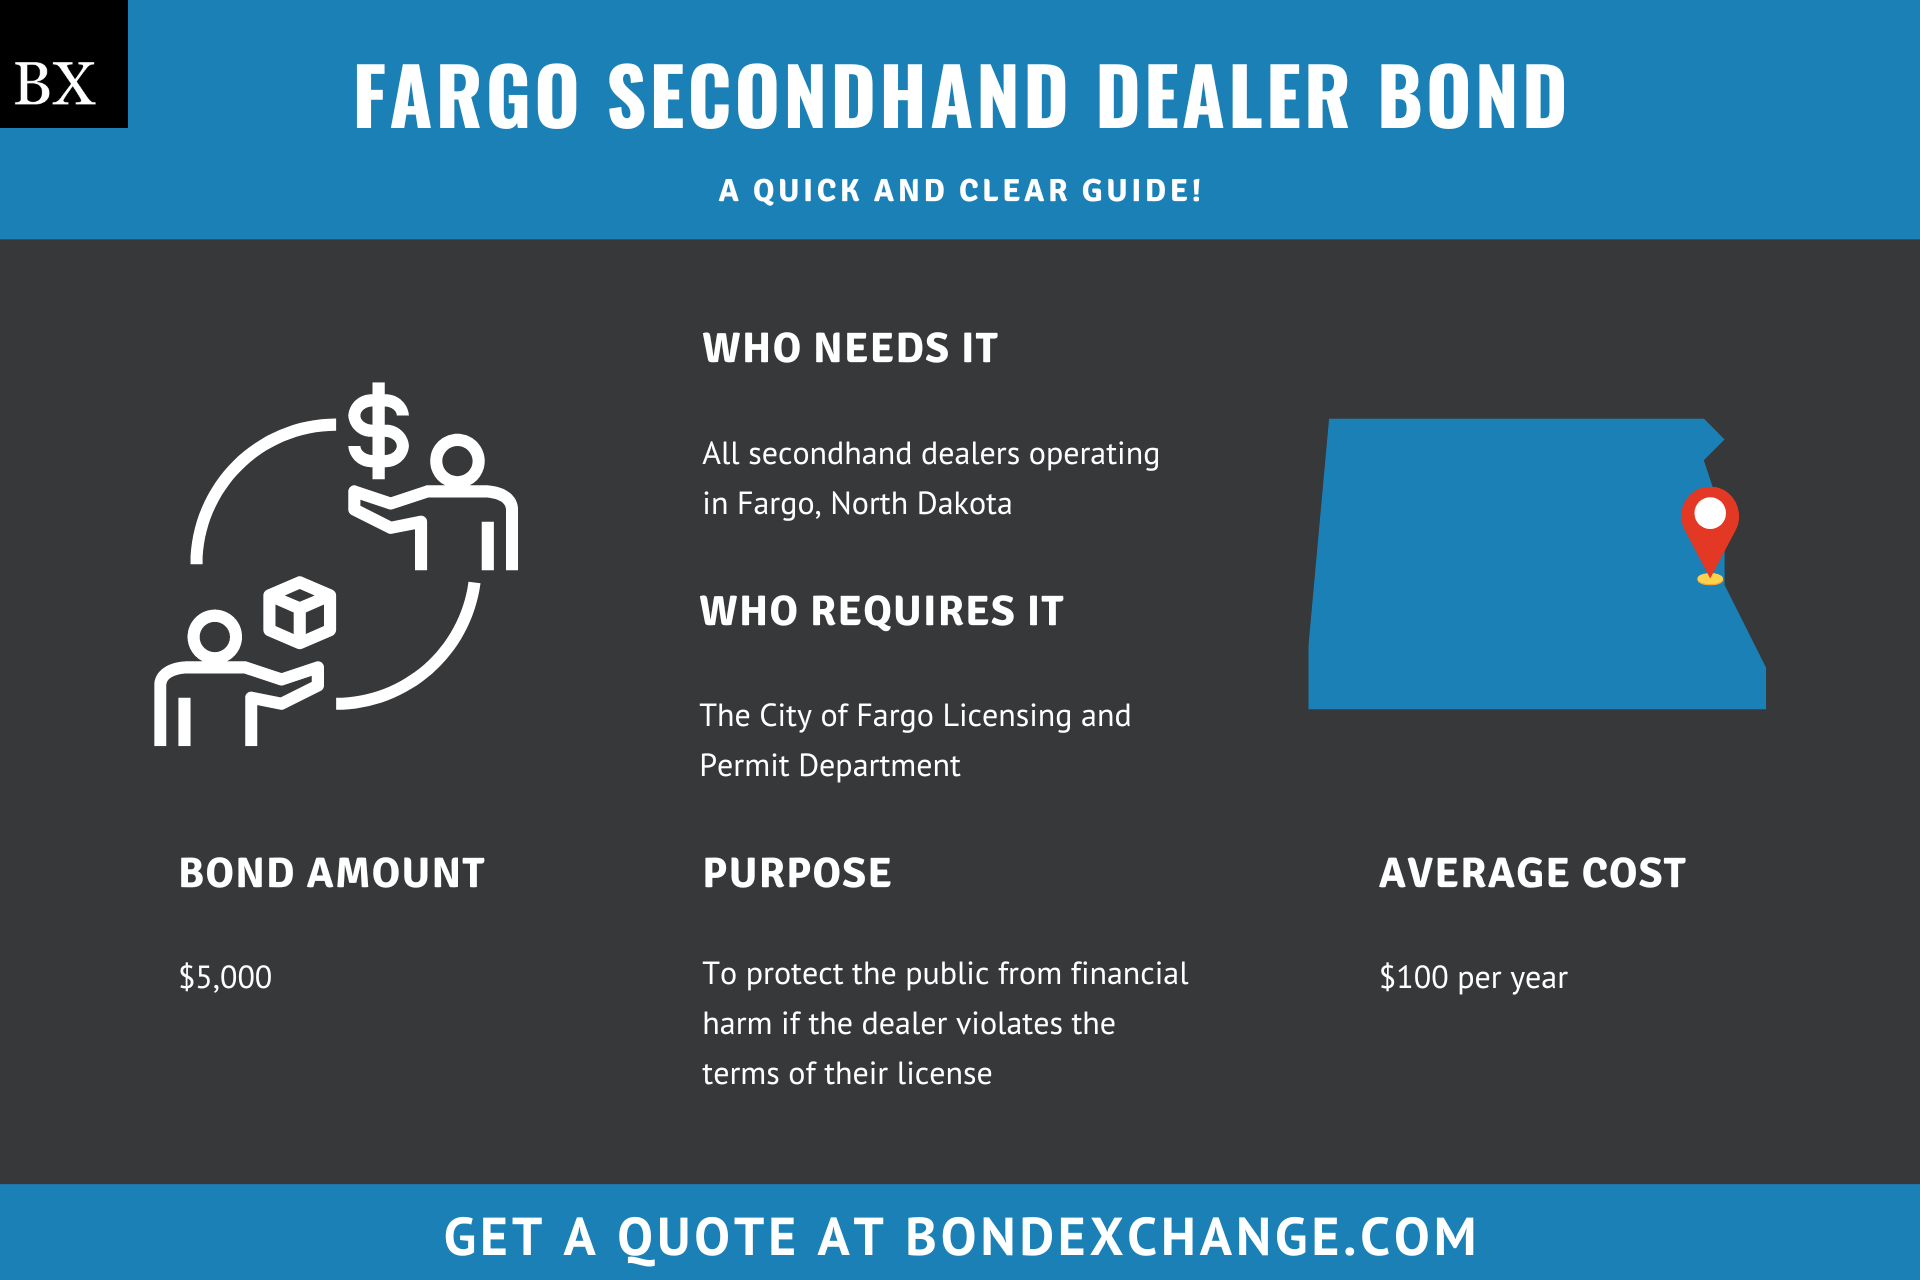 Fargo Secondhand Dealer Bond